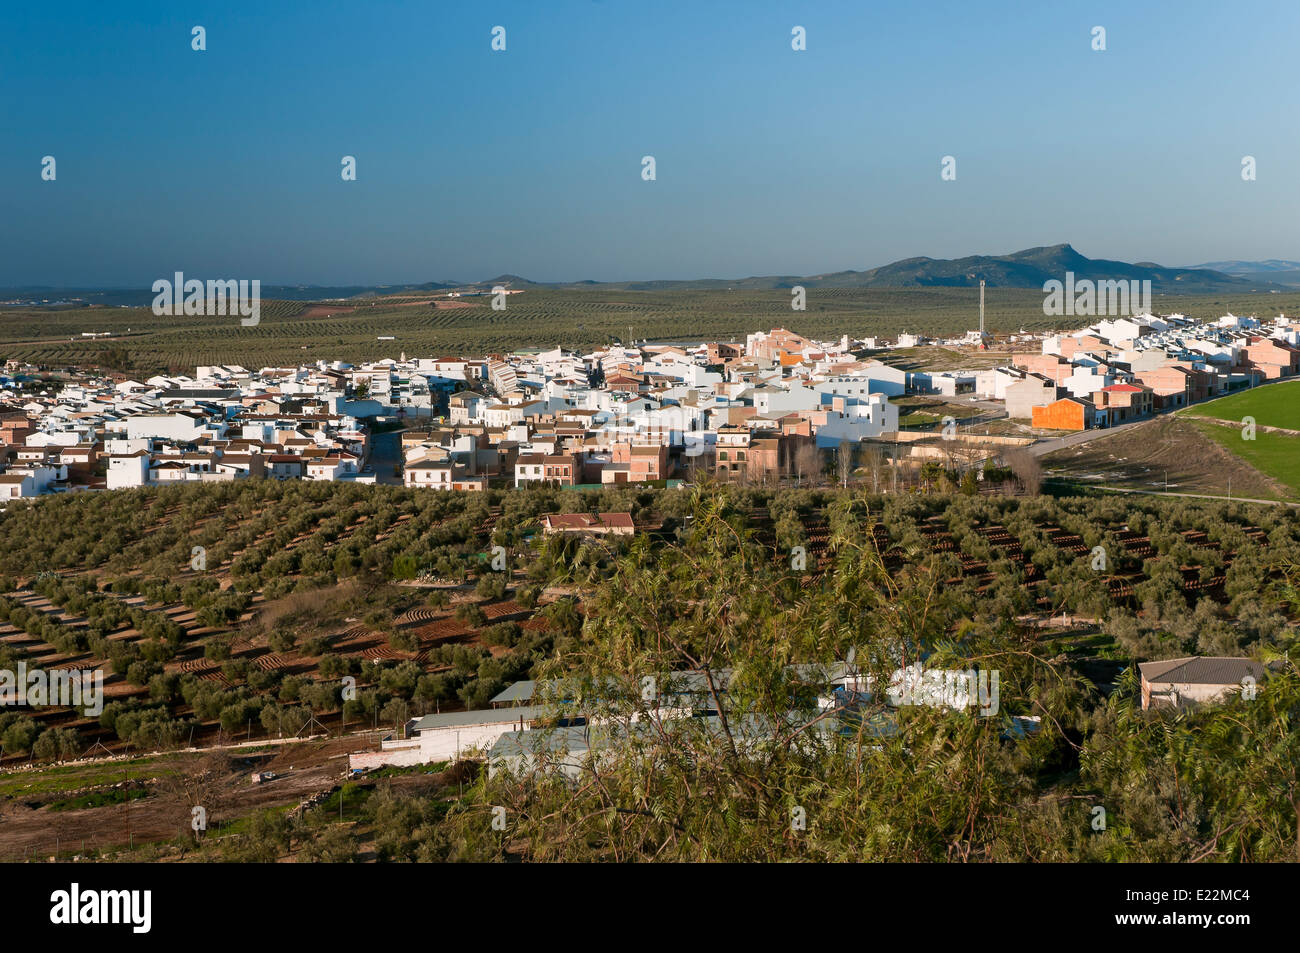 Vista panoramica, città sul percorso turistico dei banditi, casariche, Siviglia e provincia, regione dell'Andalusia, Spagna, Europa Foto Stock